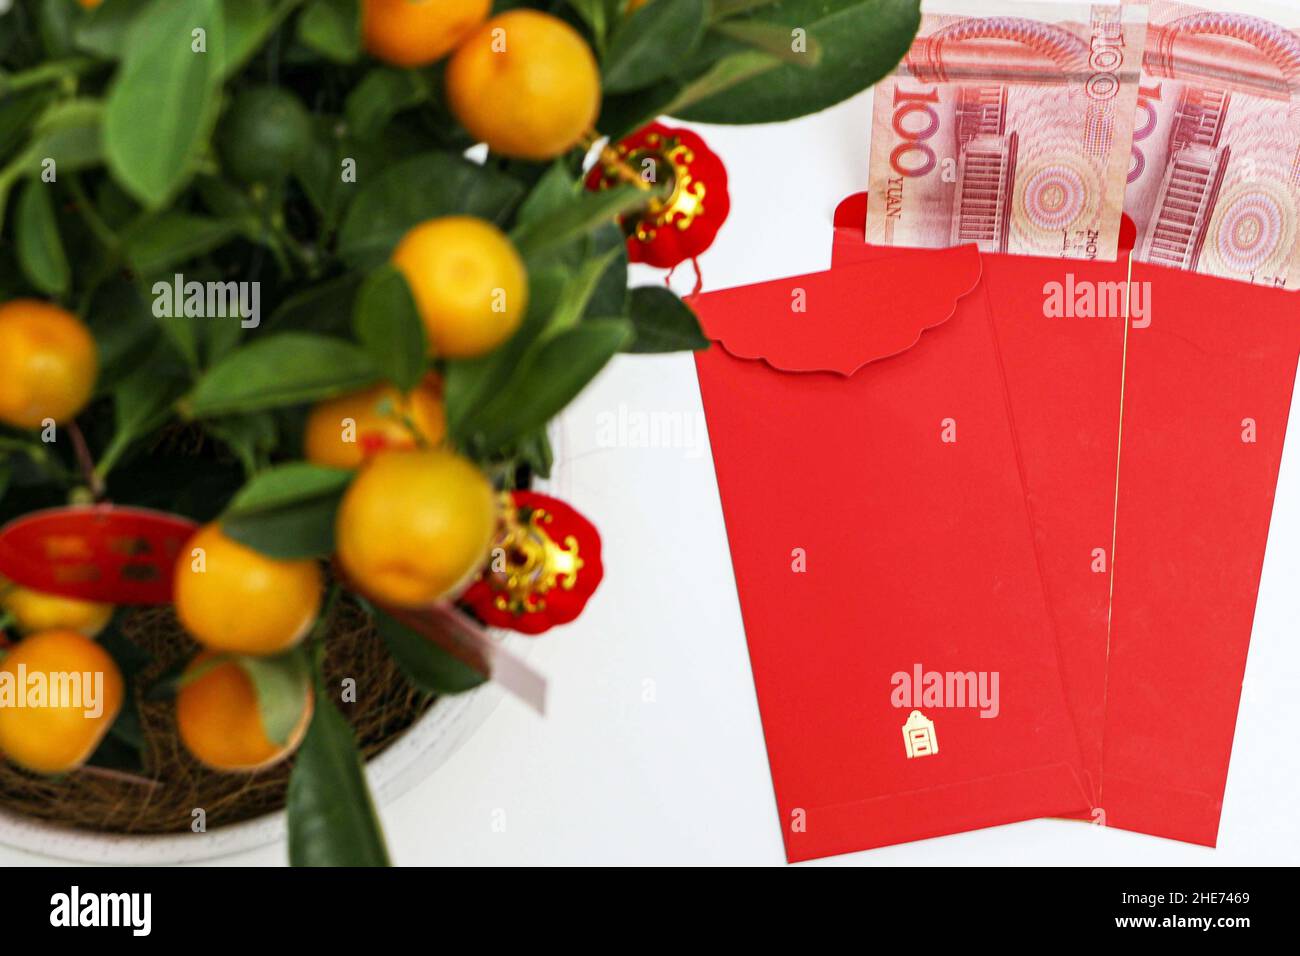 Chinesische Neujahrsbriefumschläge mit 100 chinesischen Yuan im Inneren, unterhalb der glücklichen Kumquat-Pflanze, repräsentieren Kumquats Reichtum, Wohlstand und Glück in China Stockfoto